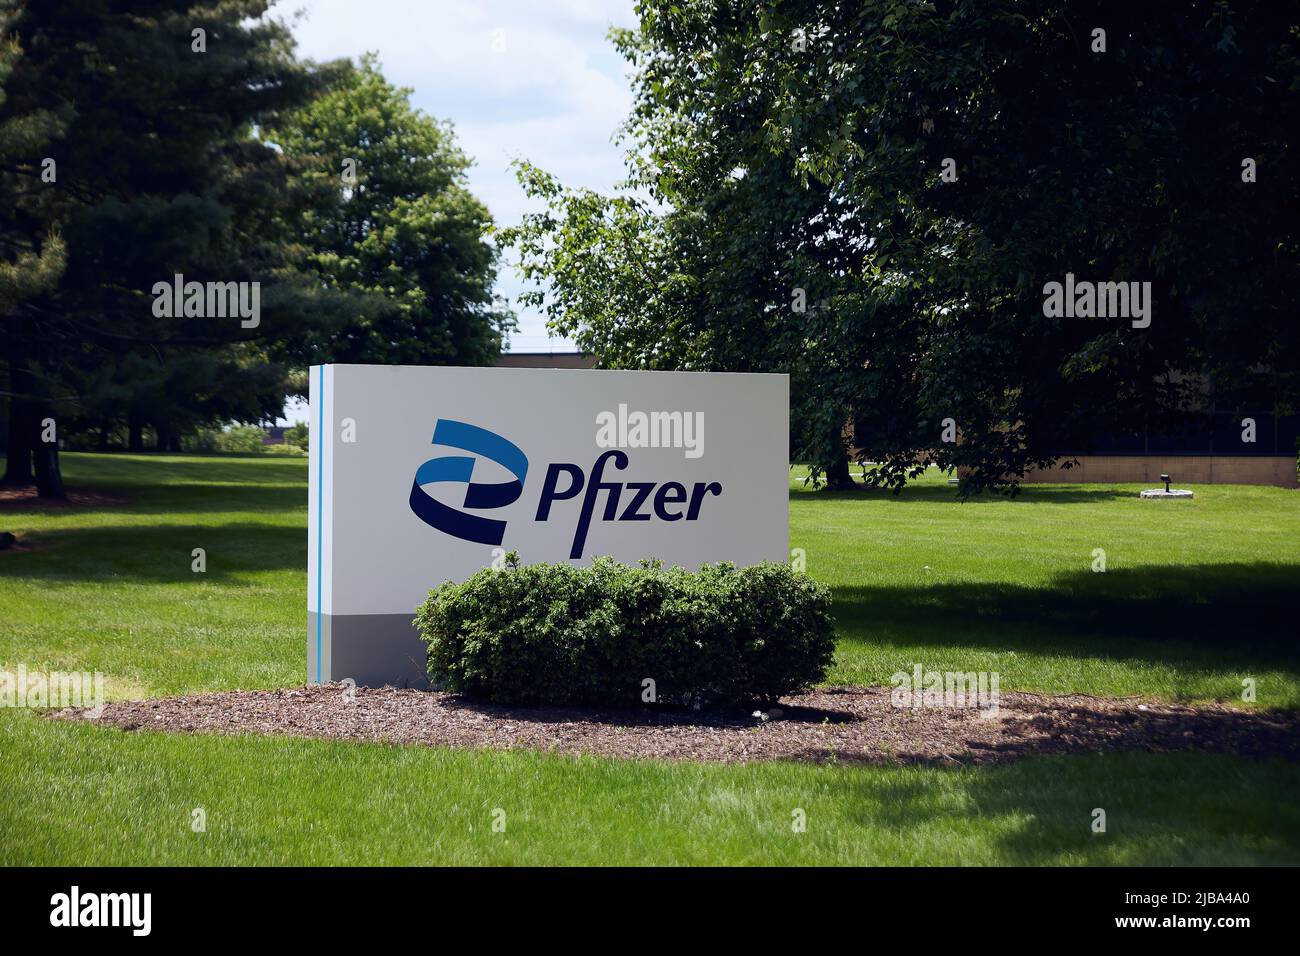 Madison, NJ, USA. 30. Mai 2022: Pfizer: Eines der weltweit führenden biopharmazeutischen Unternehmen. Pfizer Hauptsitz. Pharmaunternehmen. Stockfoto